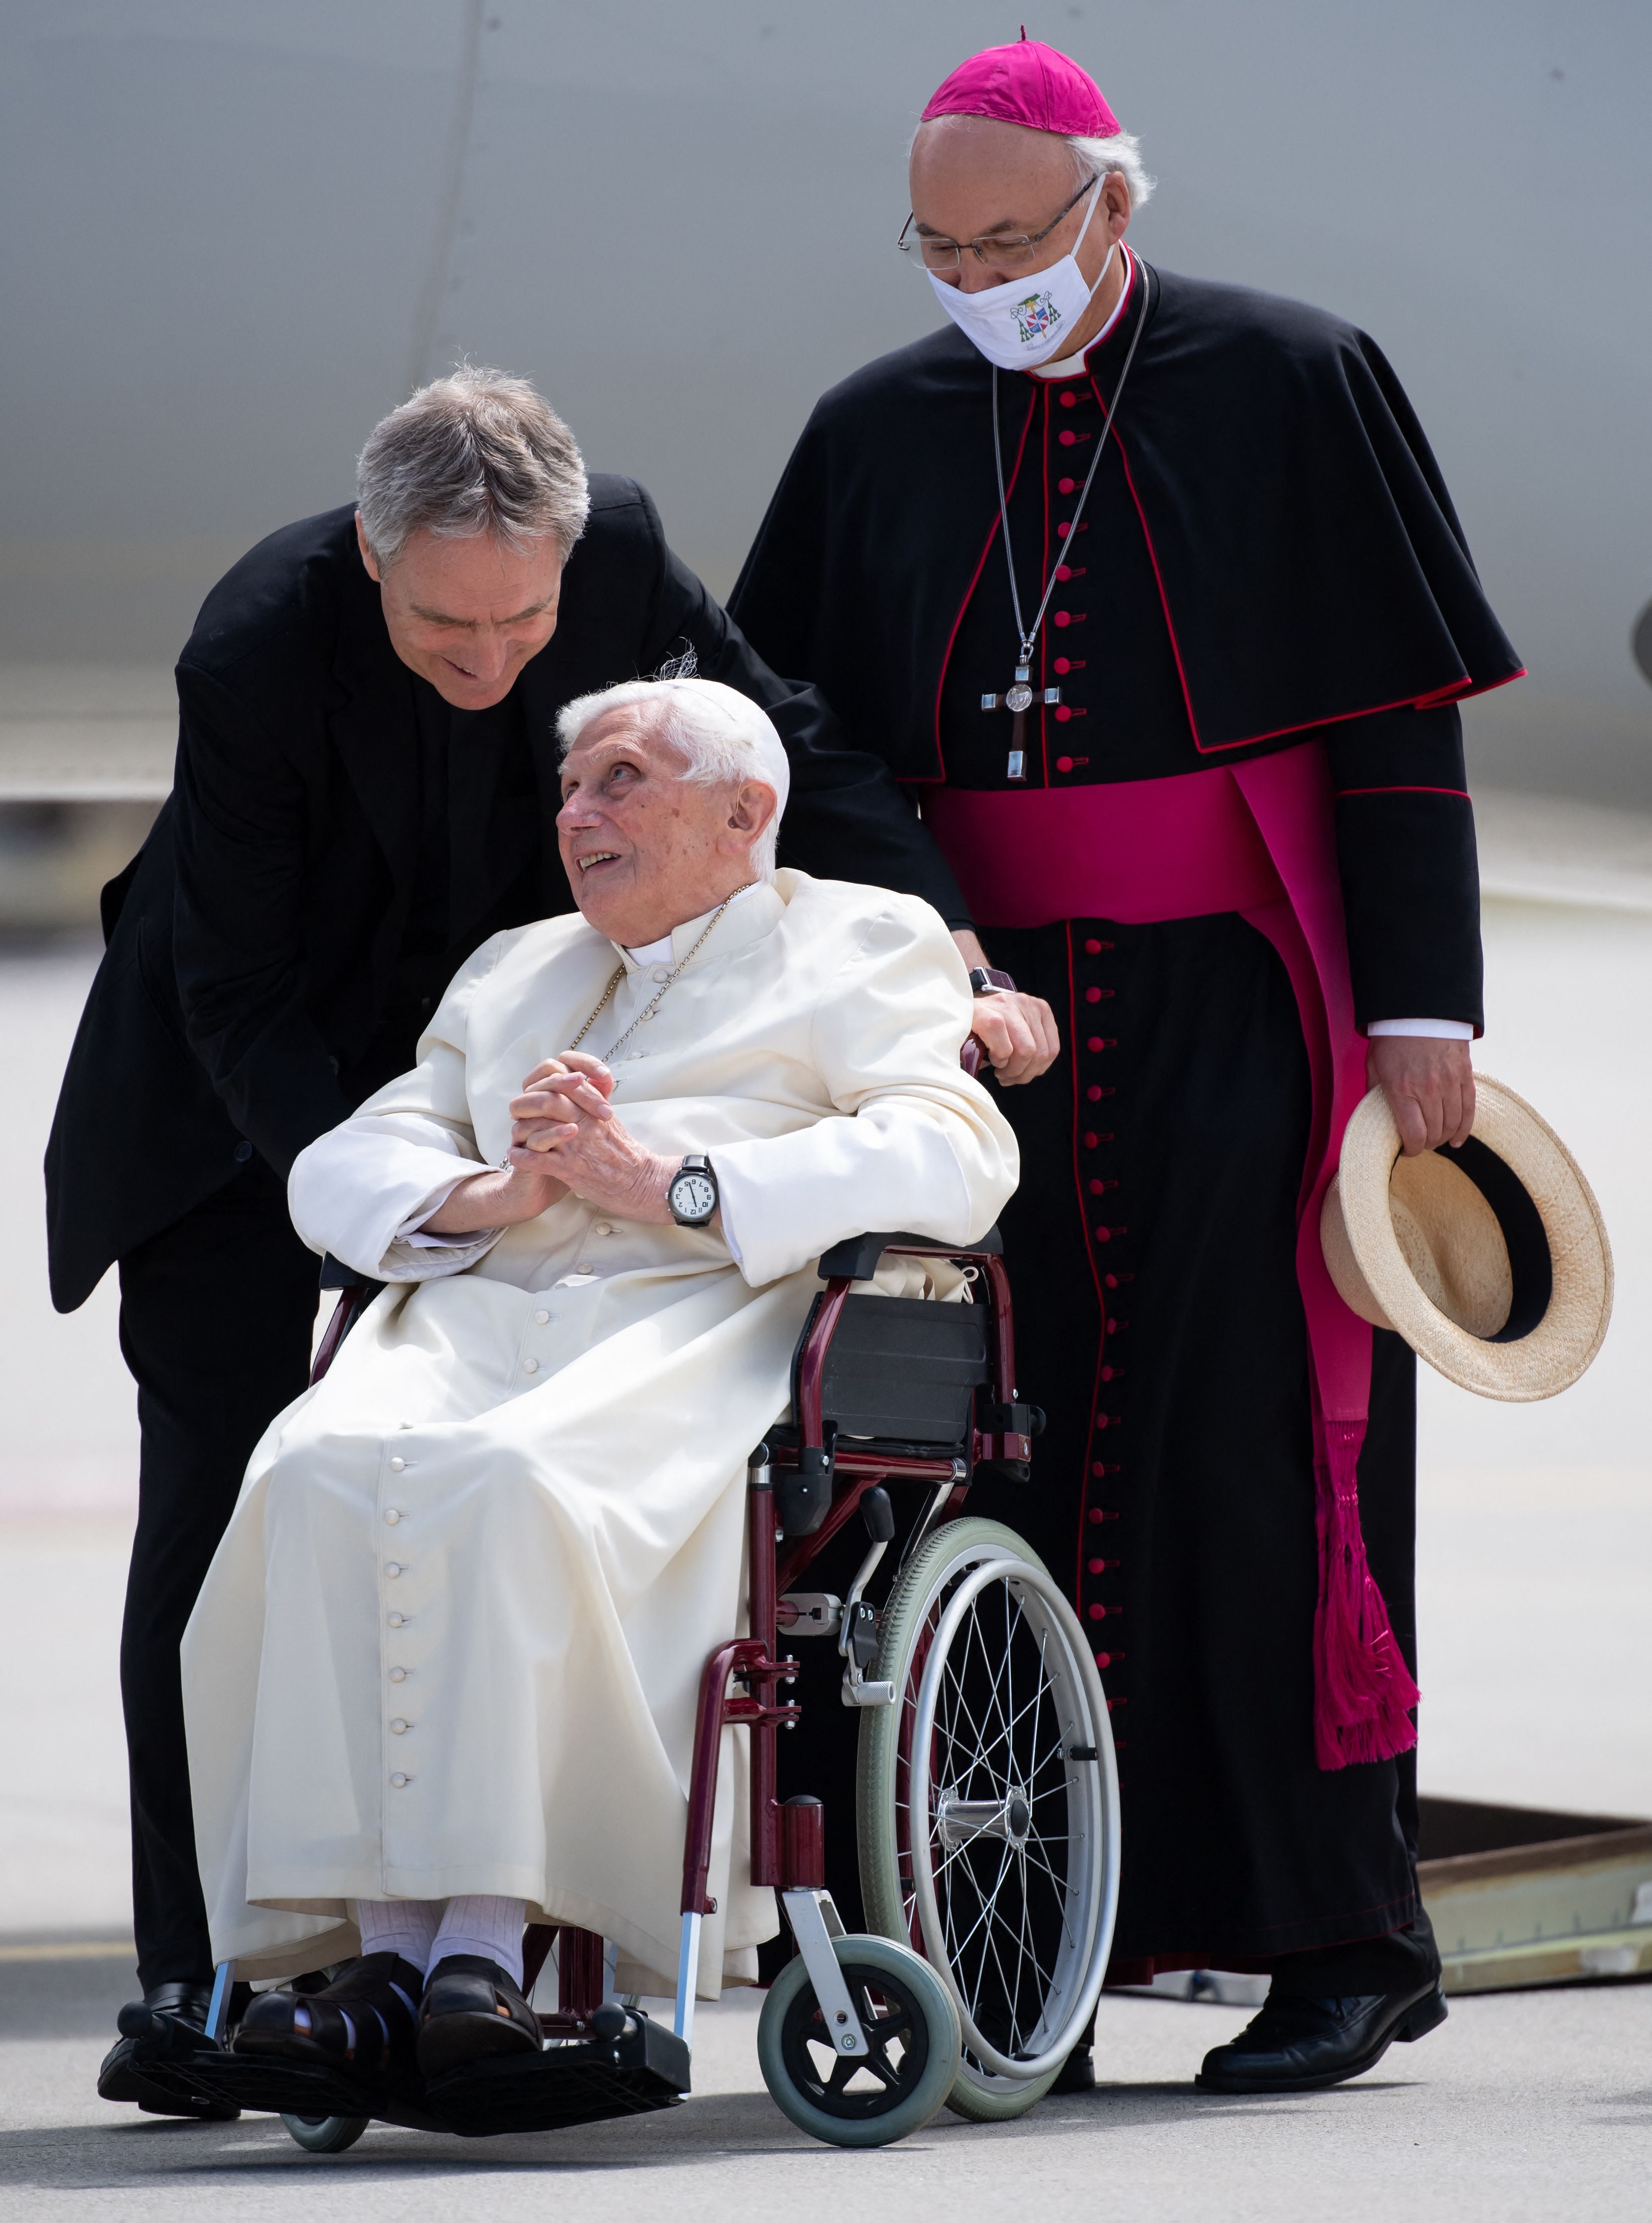 Hier kehrt der frühere Papst Benedikt XVI. gemeinsam mit seinem Privatsekretär Georg Gänswein aus Deutschland in den Vatikan zurück, wo er seinen kranken Bruder besucht hatte.